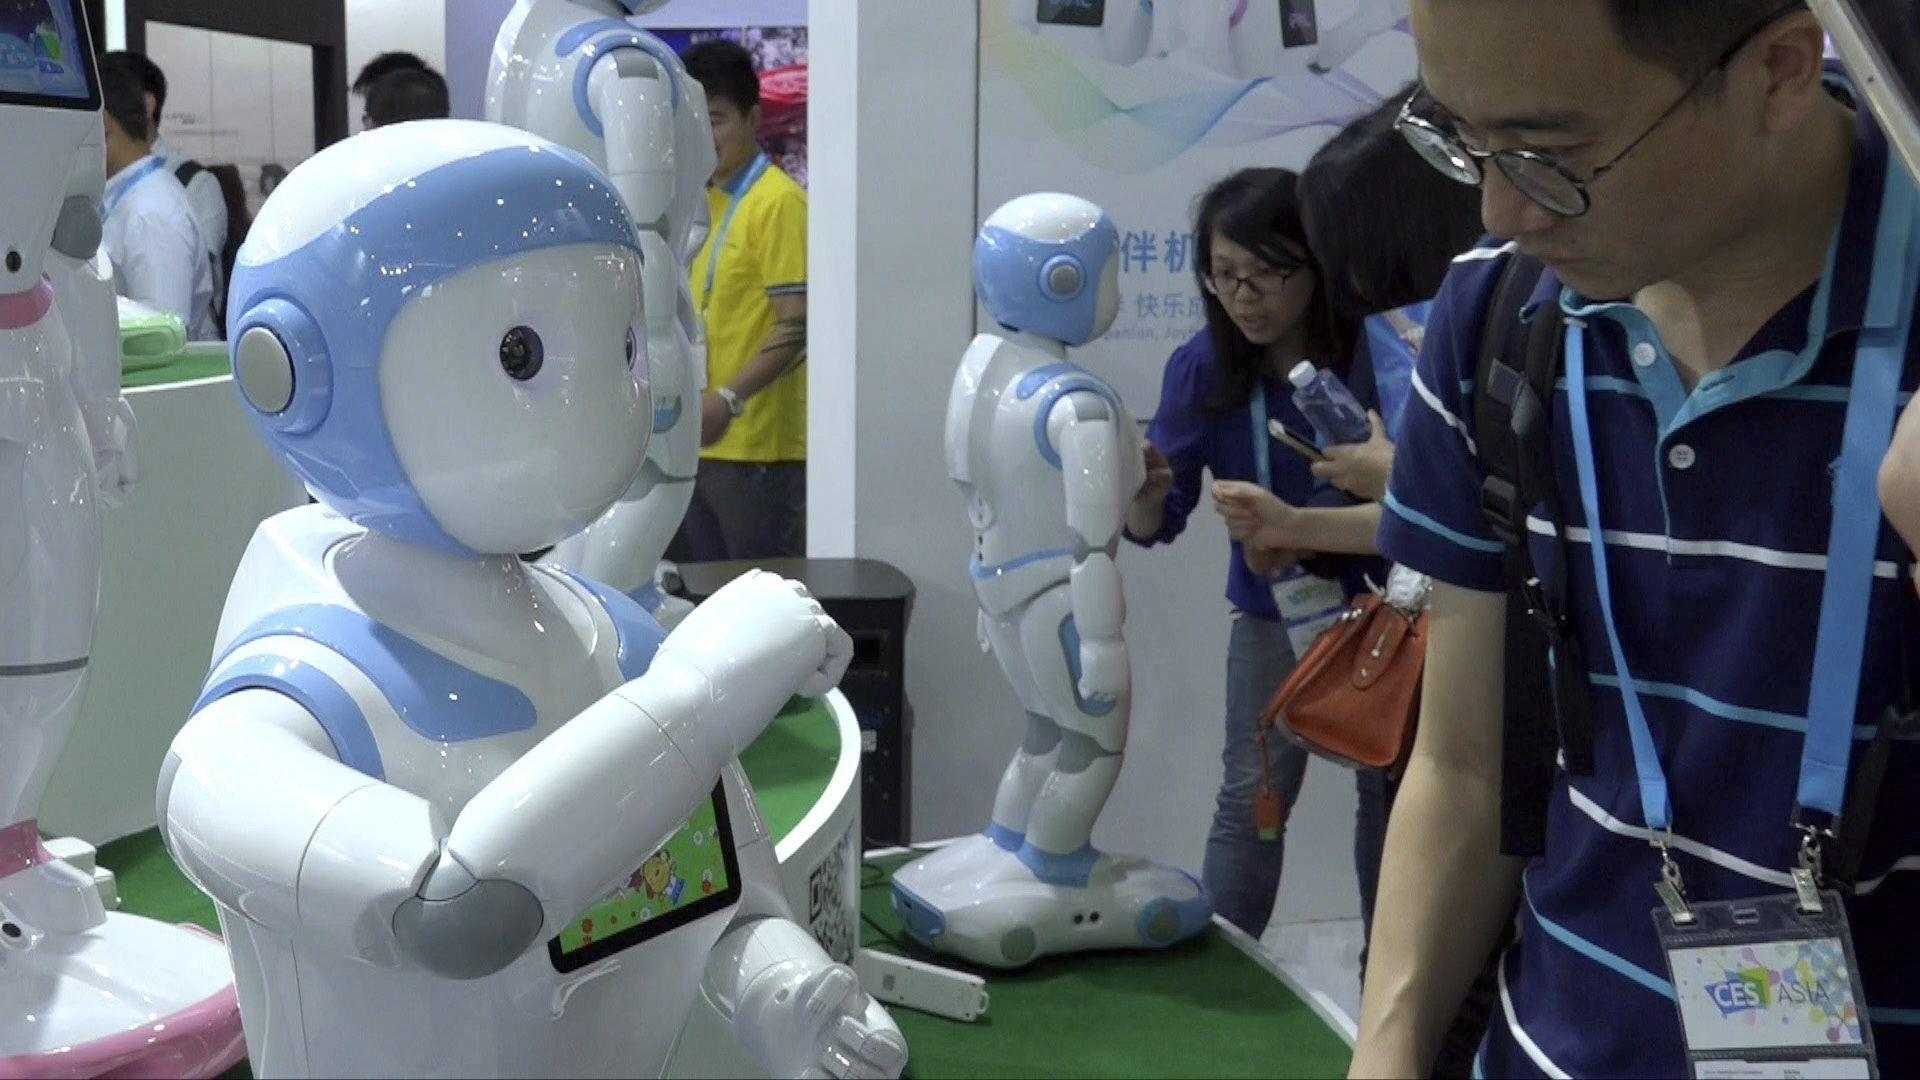 INSOLITE. En Chine, un robot-professeur pour garder les tout-petits